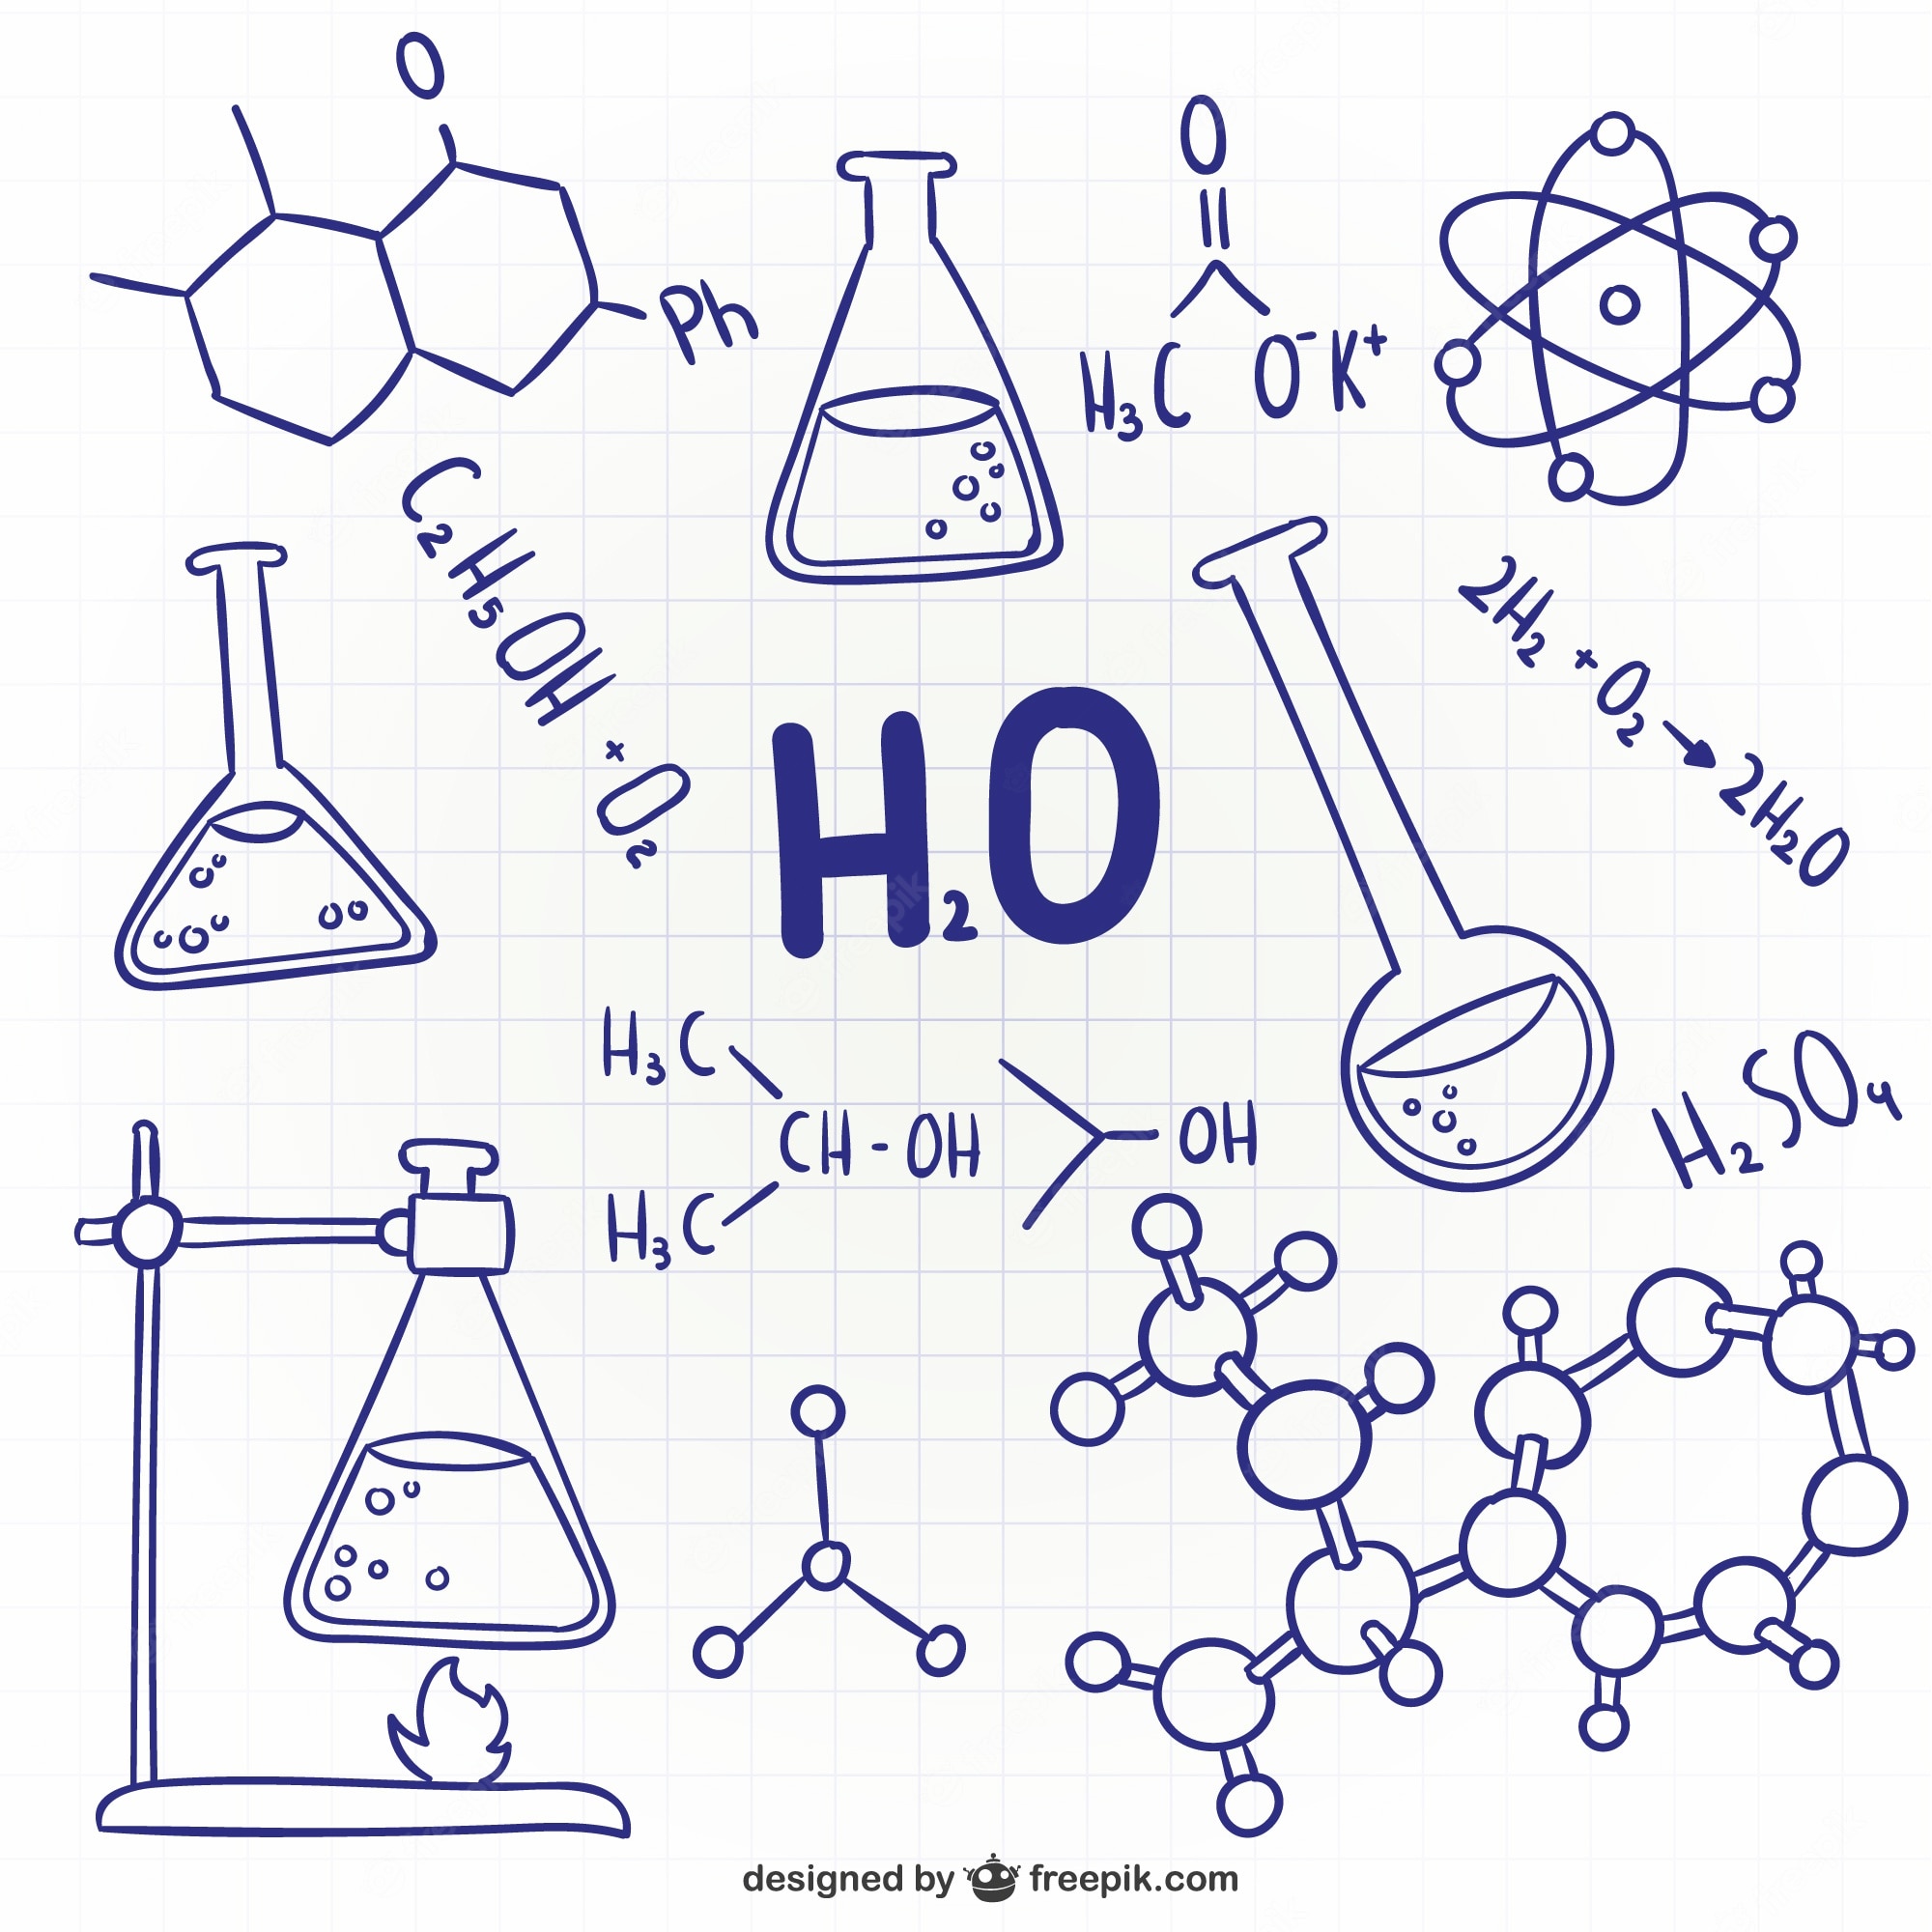 ligações químicas - Série 10 - Questionário